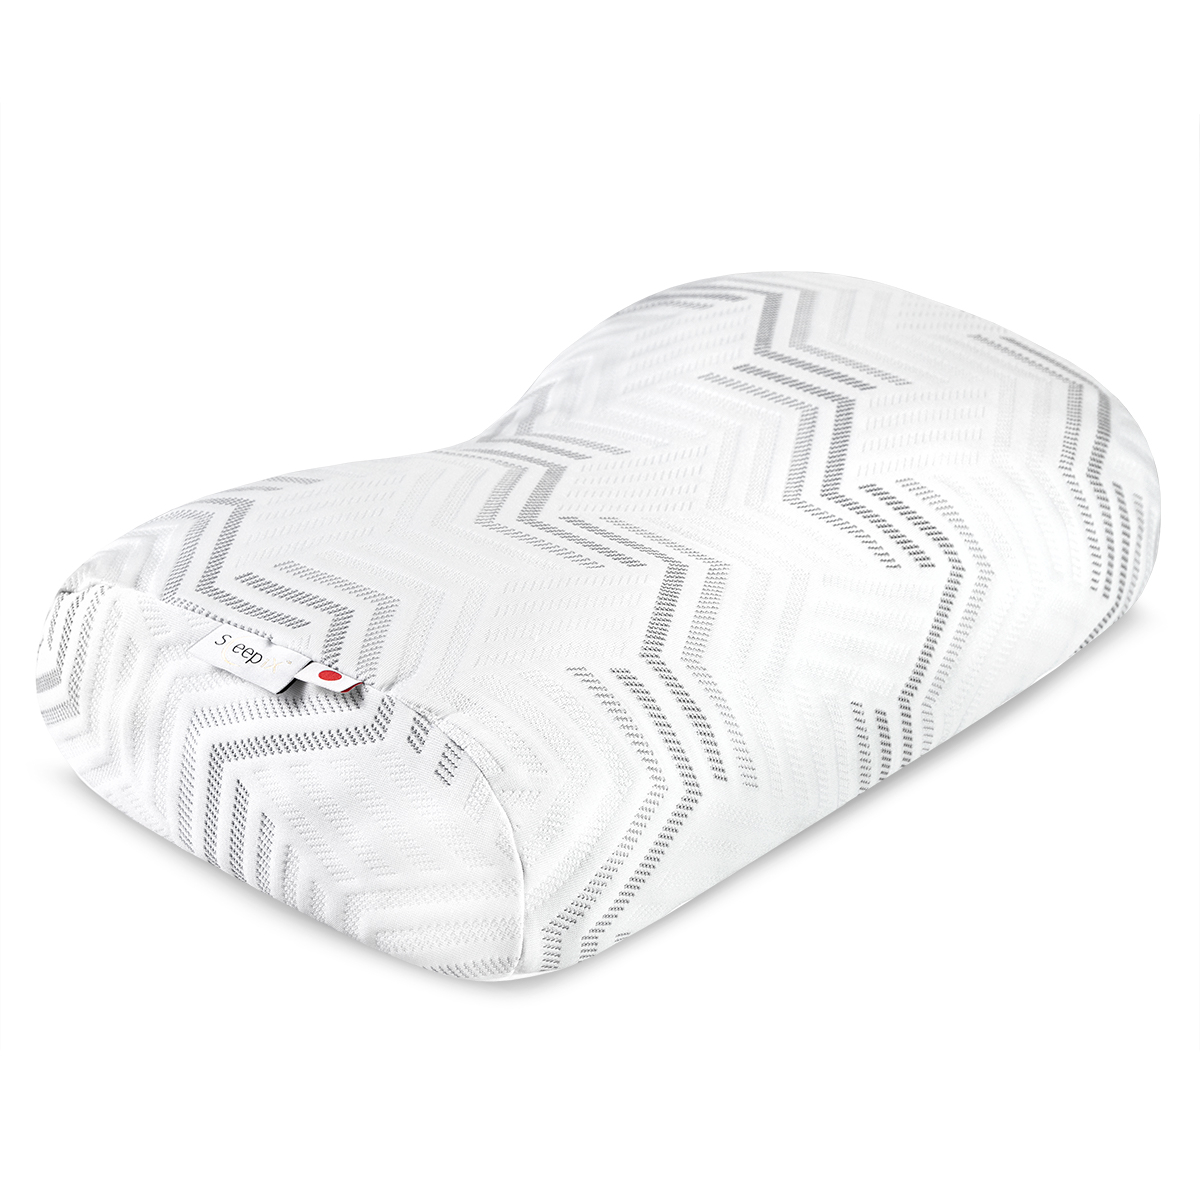 Анатомическая подушка Sleepix Миоко белая 57х35х9,5 см, цвет белый - фото 1